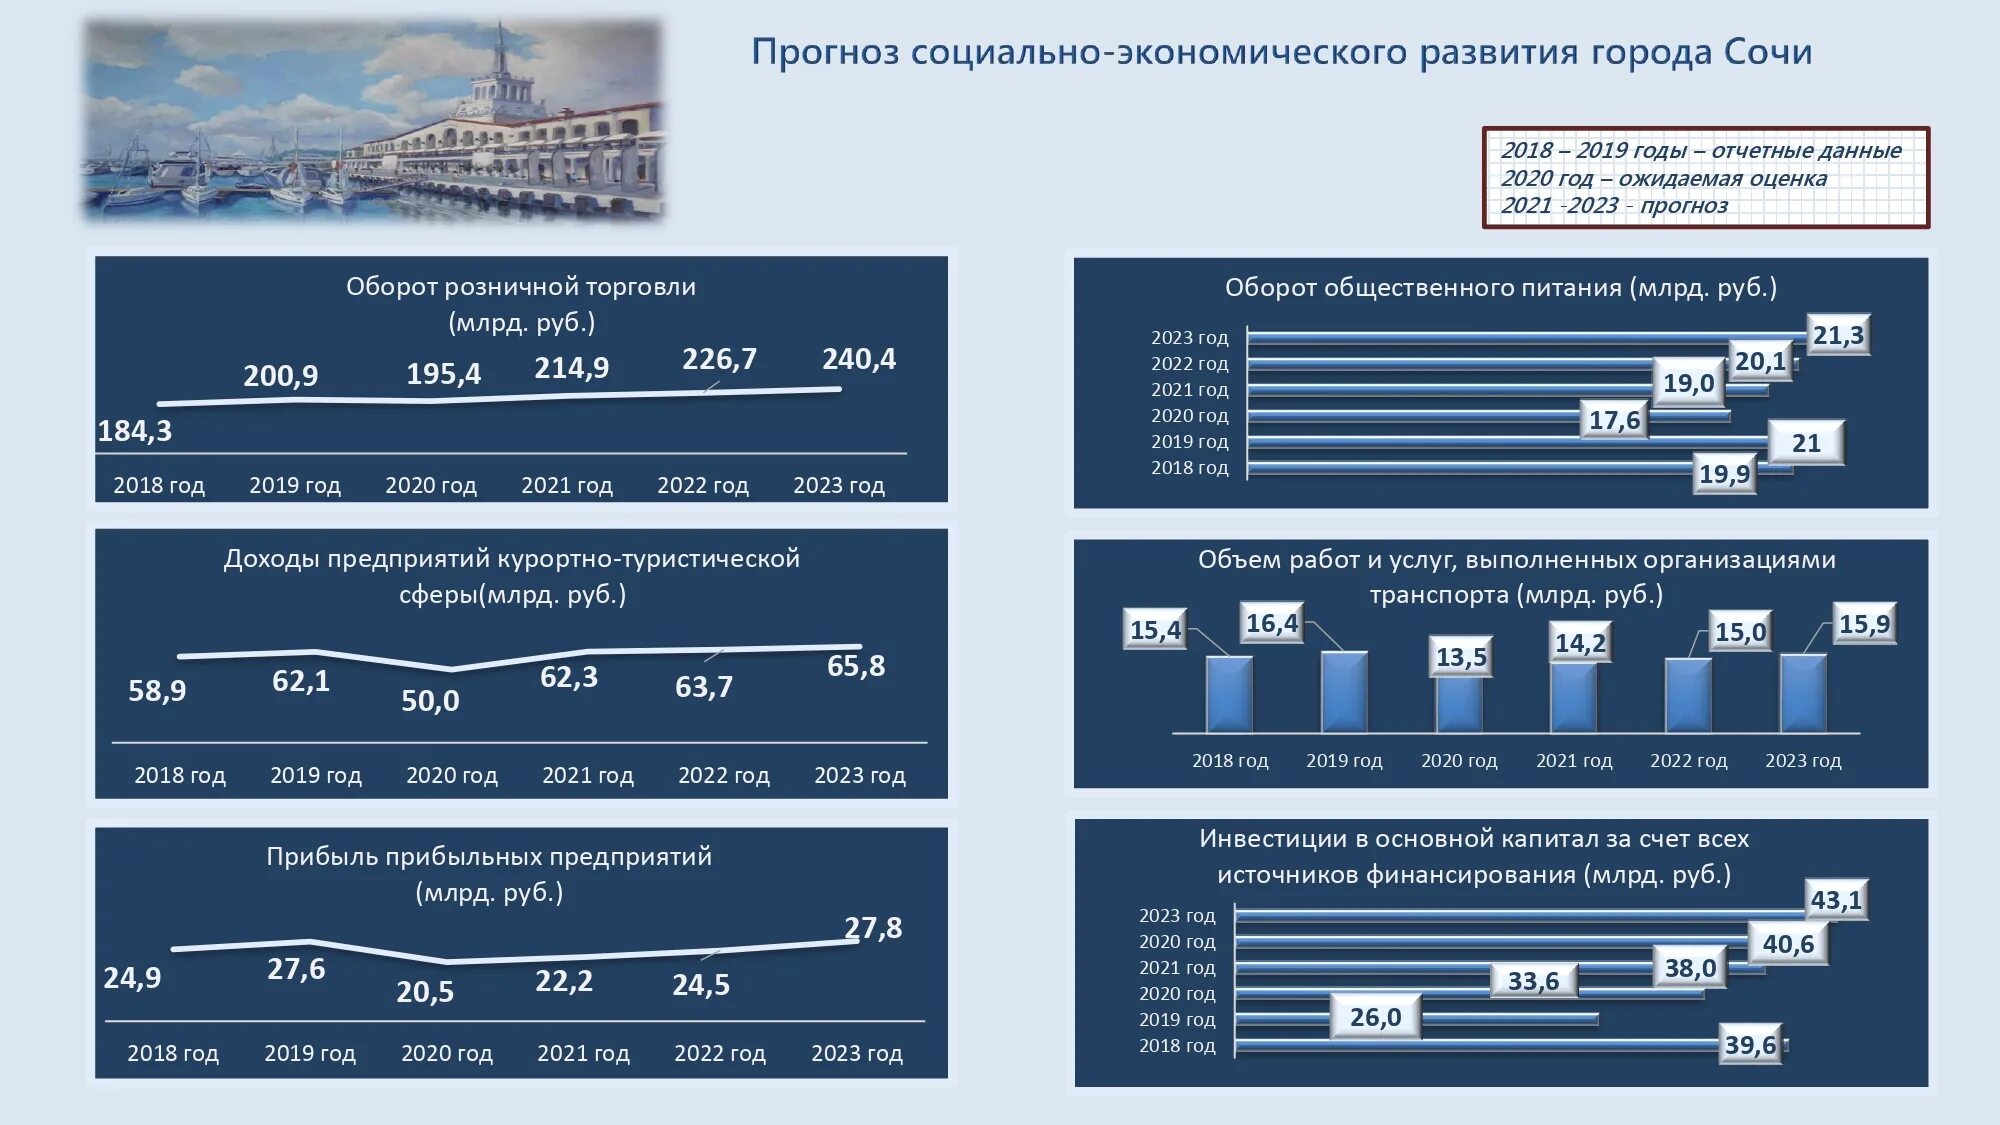 Комплектование 2024 2025. Бюджет на 2023 год. Бюджет России 2023 план. Бюджет 2021-2023. Прогноз социально-экономического развития.